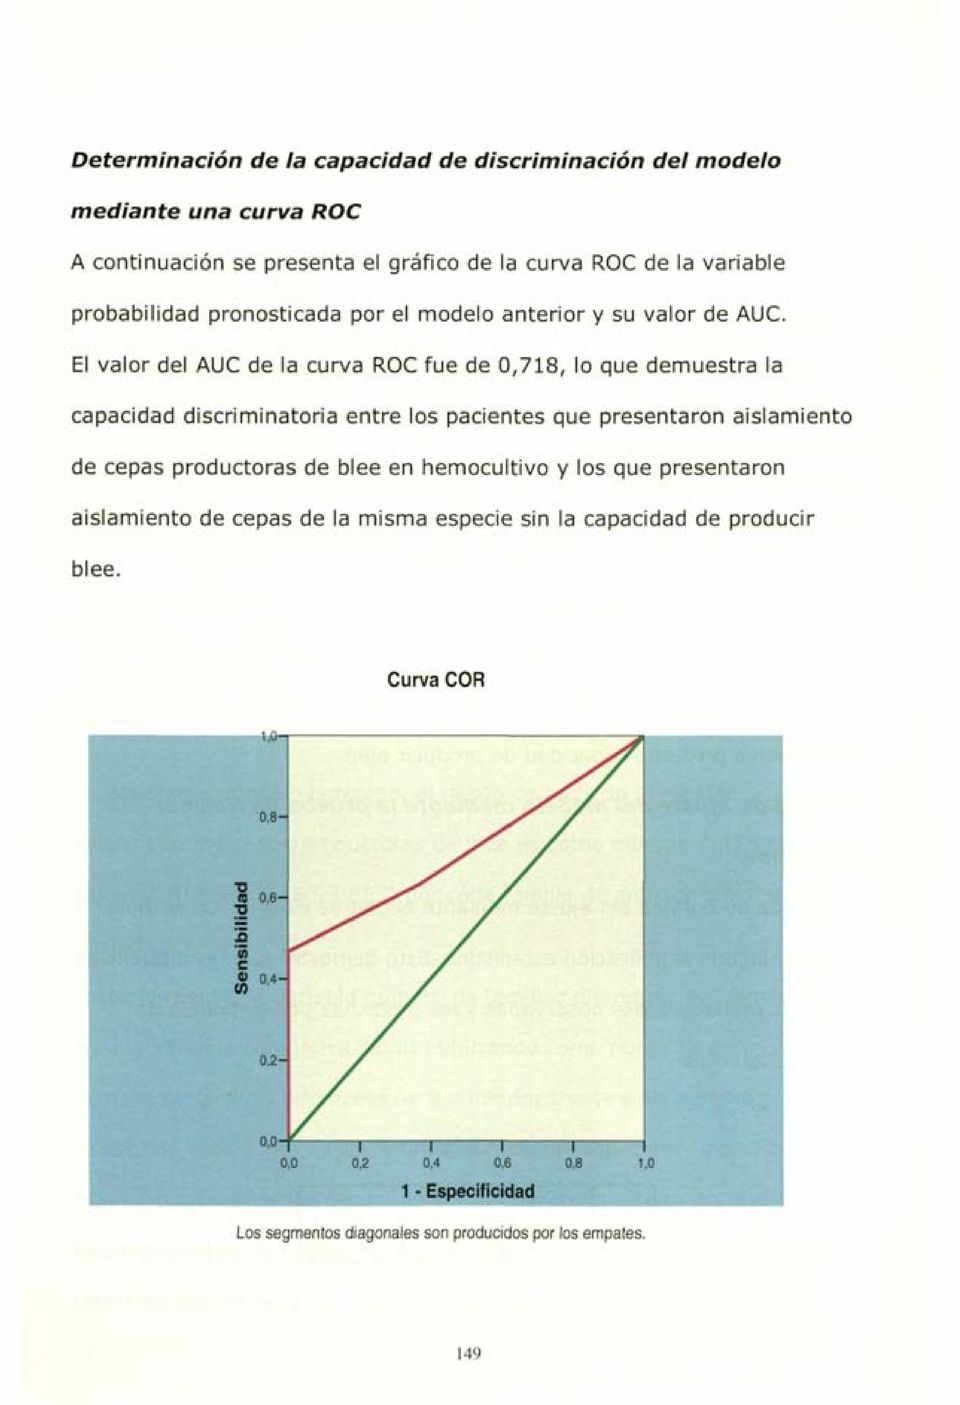 El valor del AUC de la curva ROC fue de 0,718, lo que demuestra la capacidad discriminatoria entre los pacientes que presentaron aislamiento de cepas productoras